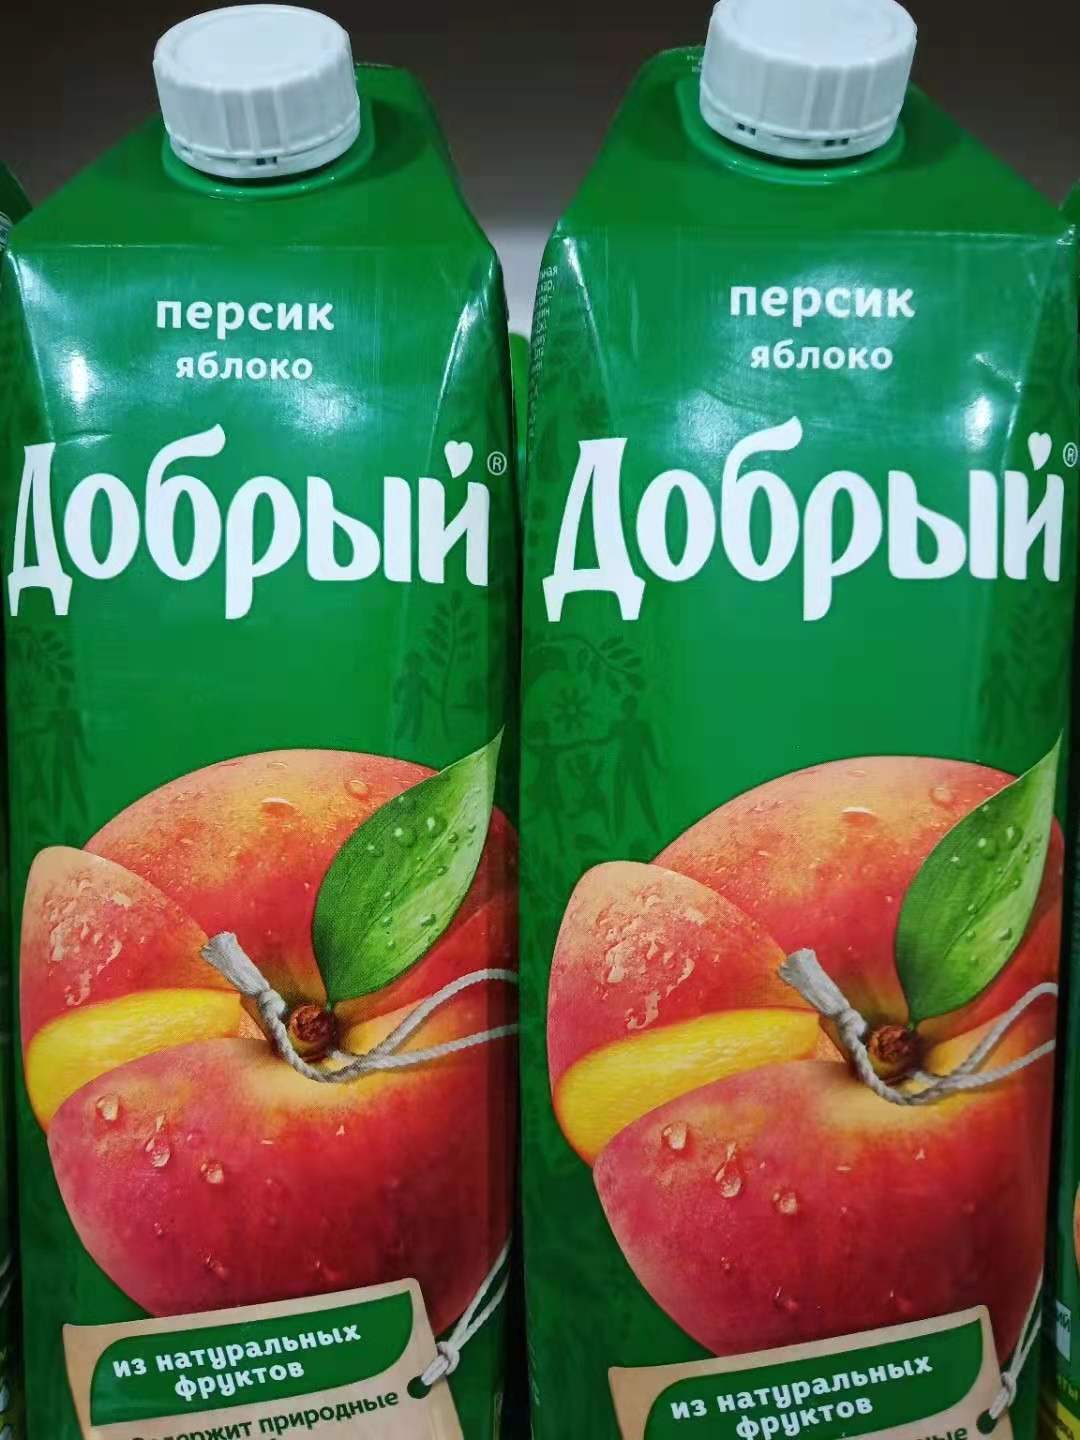 俄罗斯原装进口葡萄浓缩果汁饮料苹果橙子菠萝善牌西红柿1000毫升